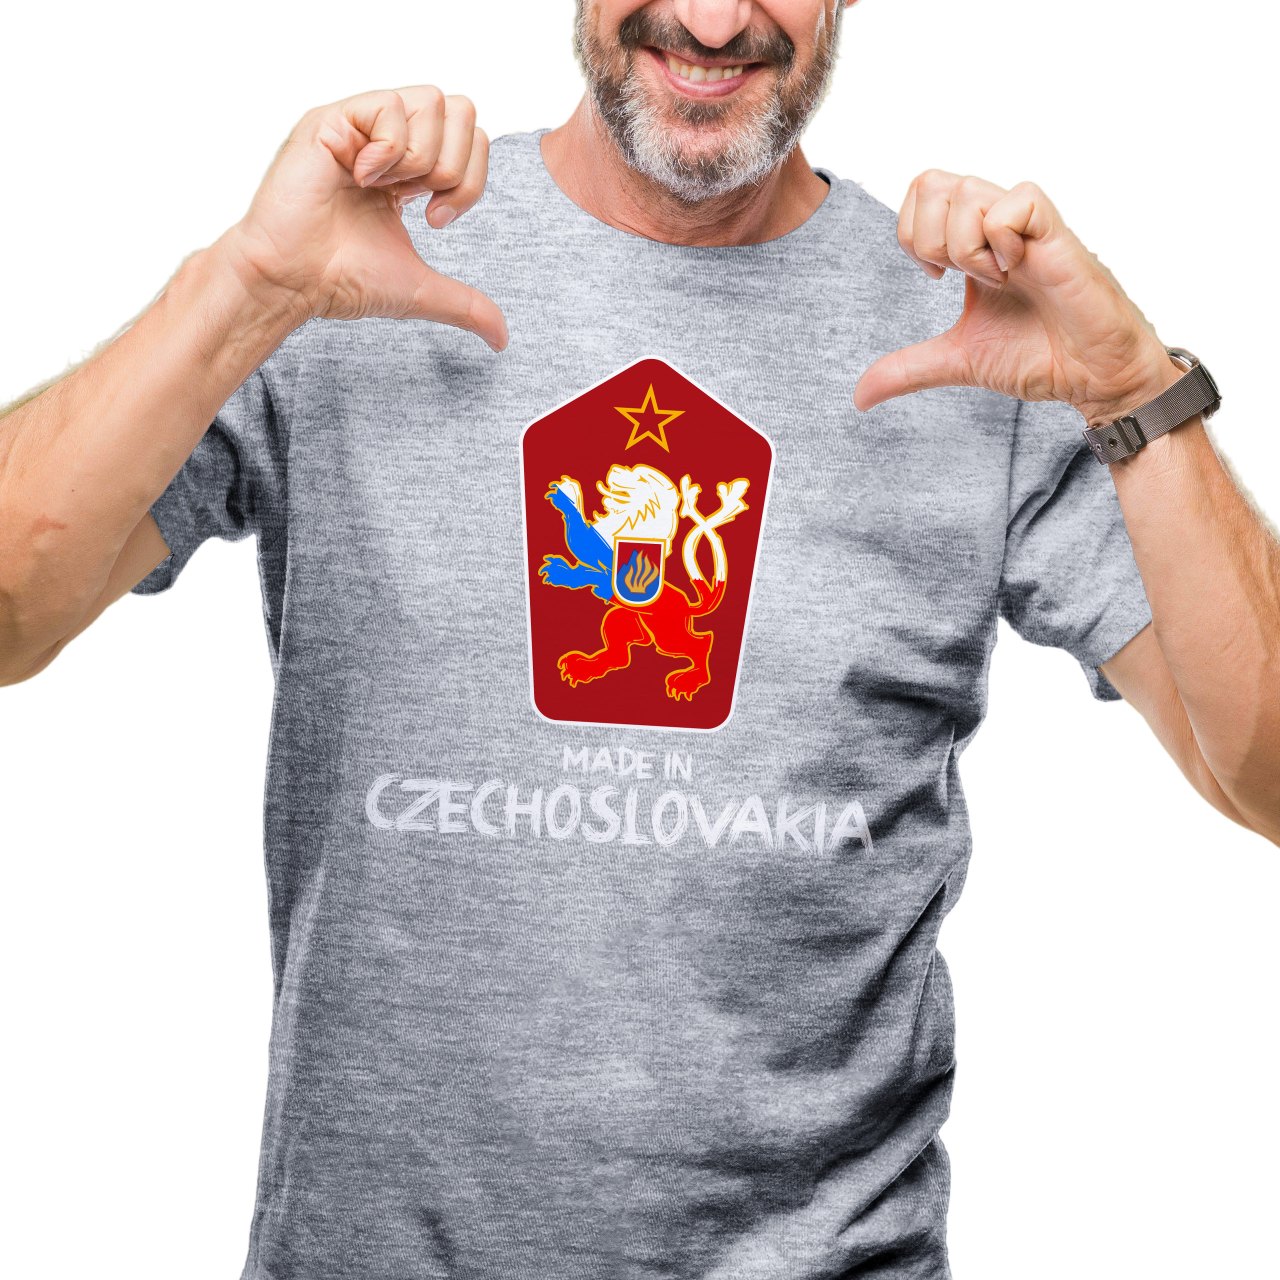 Pánské tričko s potiskem “Made in Czechoslovakia”